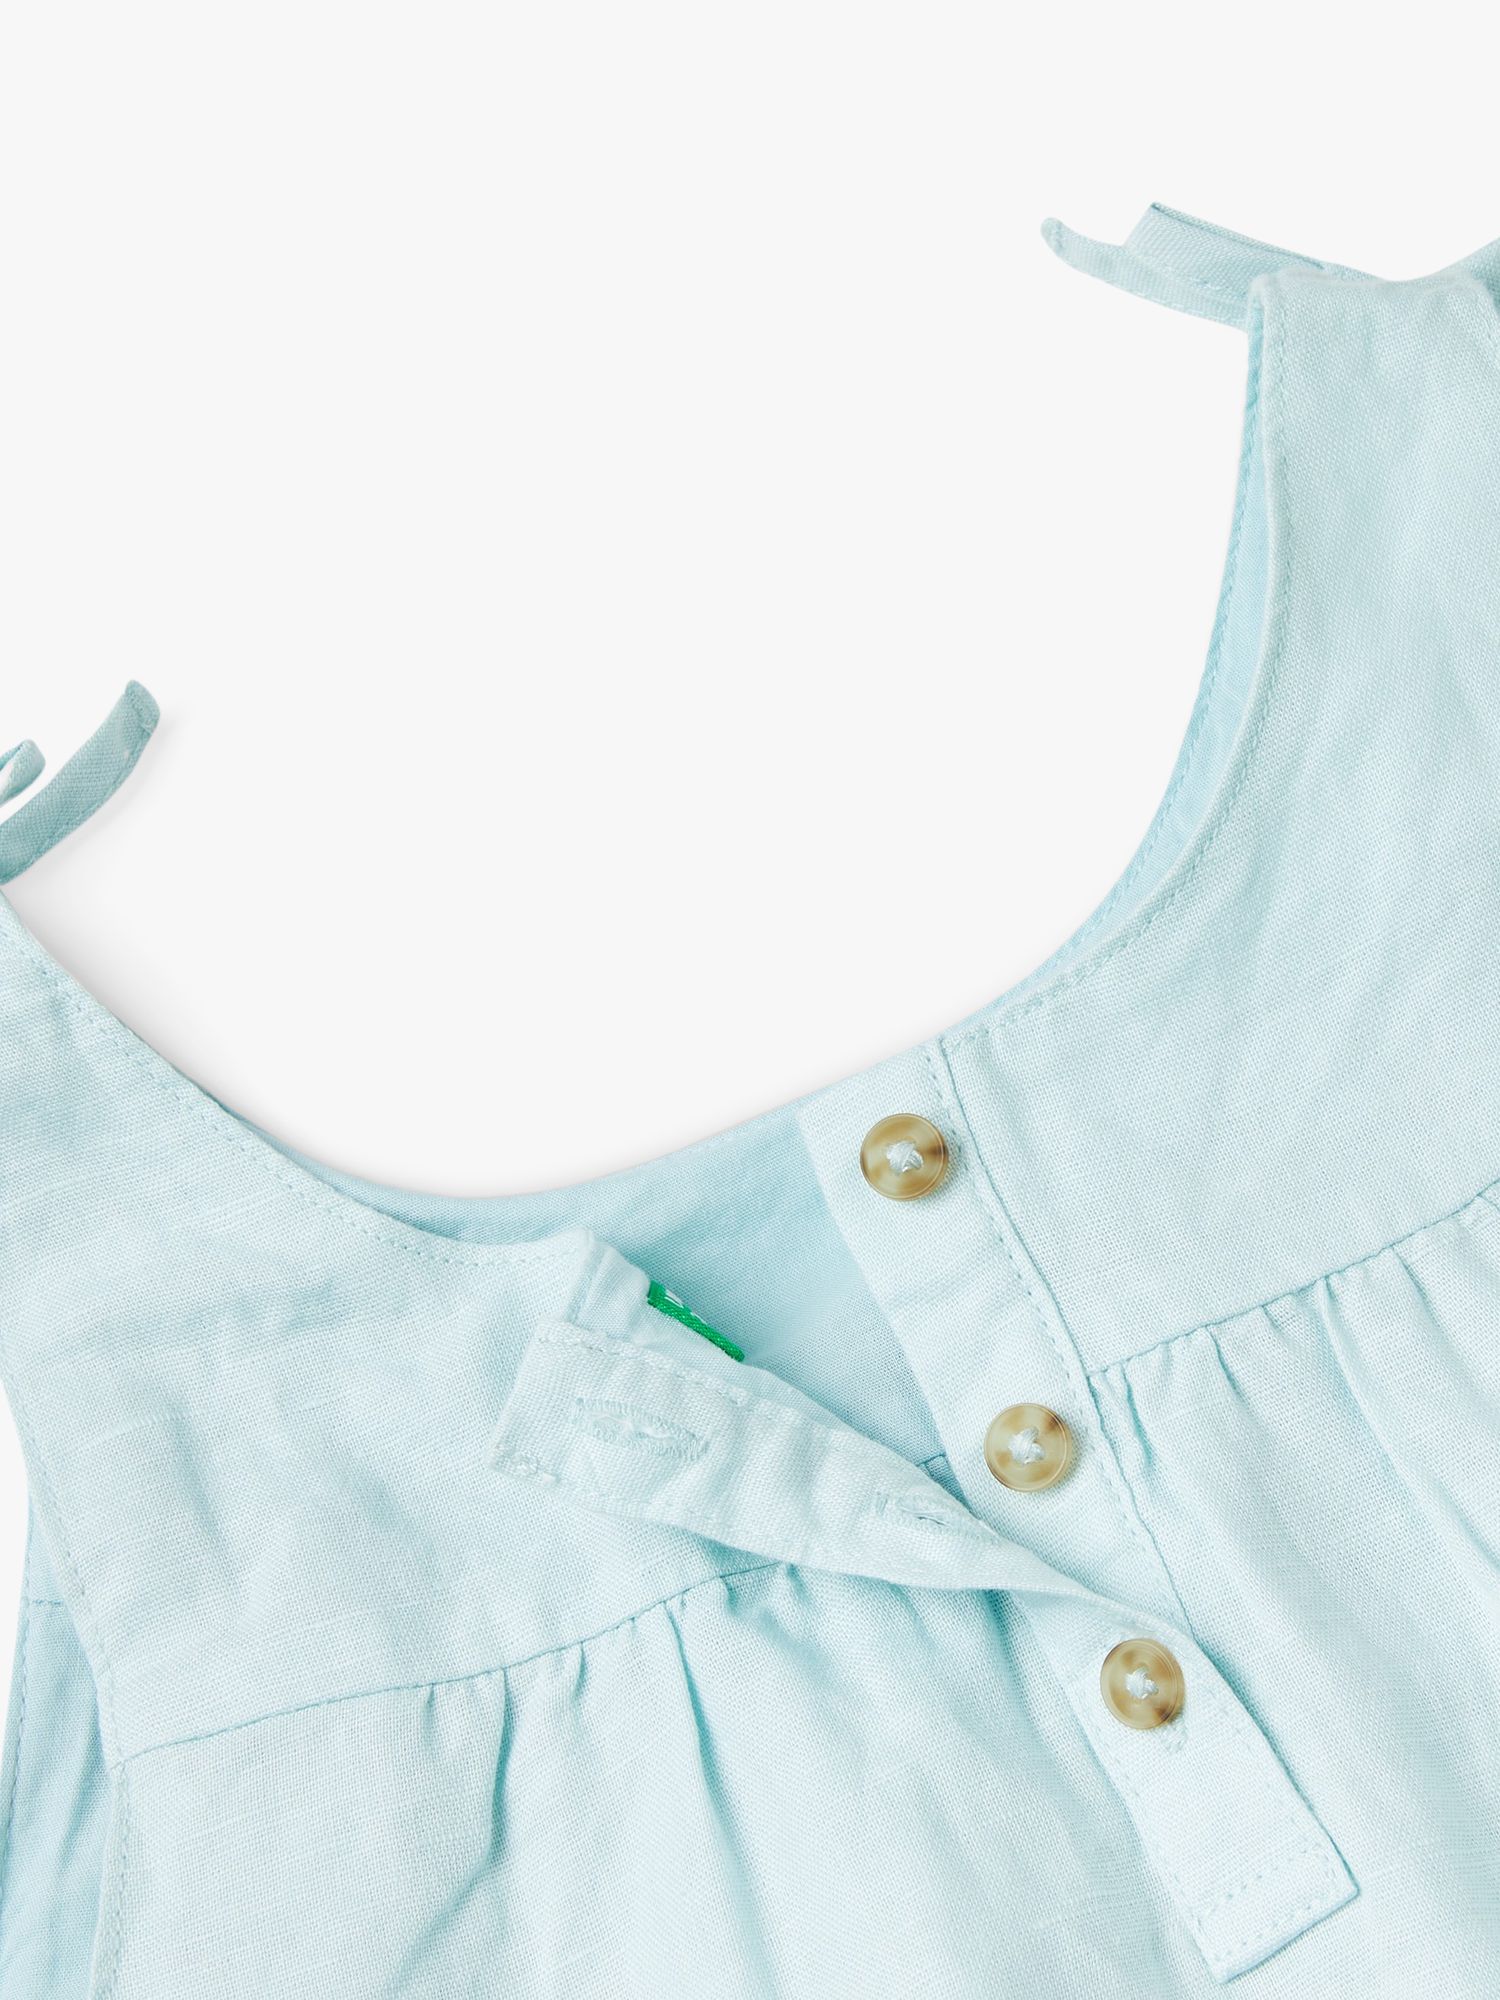 Benetton Kids' Linen Blend Ruffle Bow Detail Dress, Starlight Blue, 18-24 months